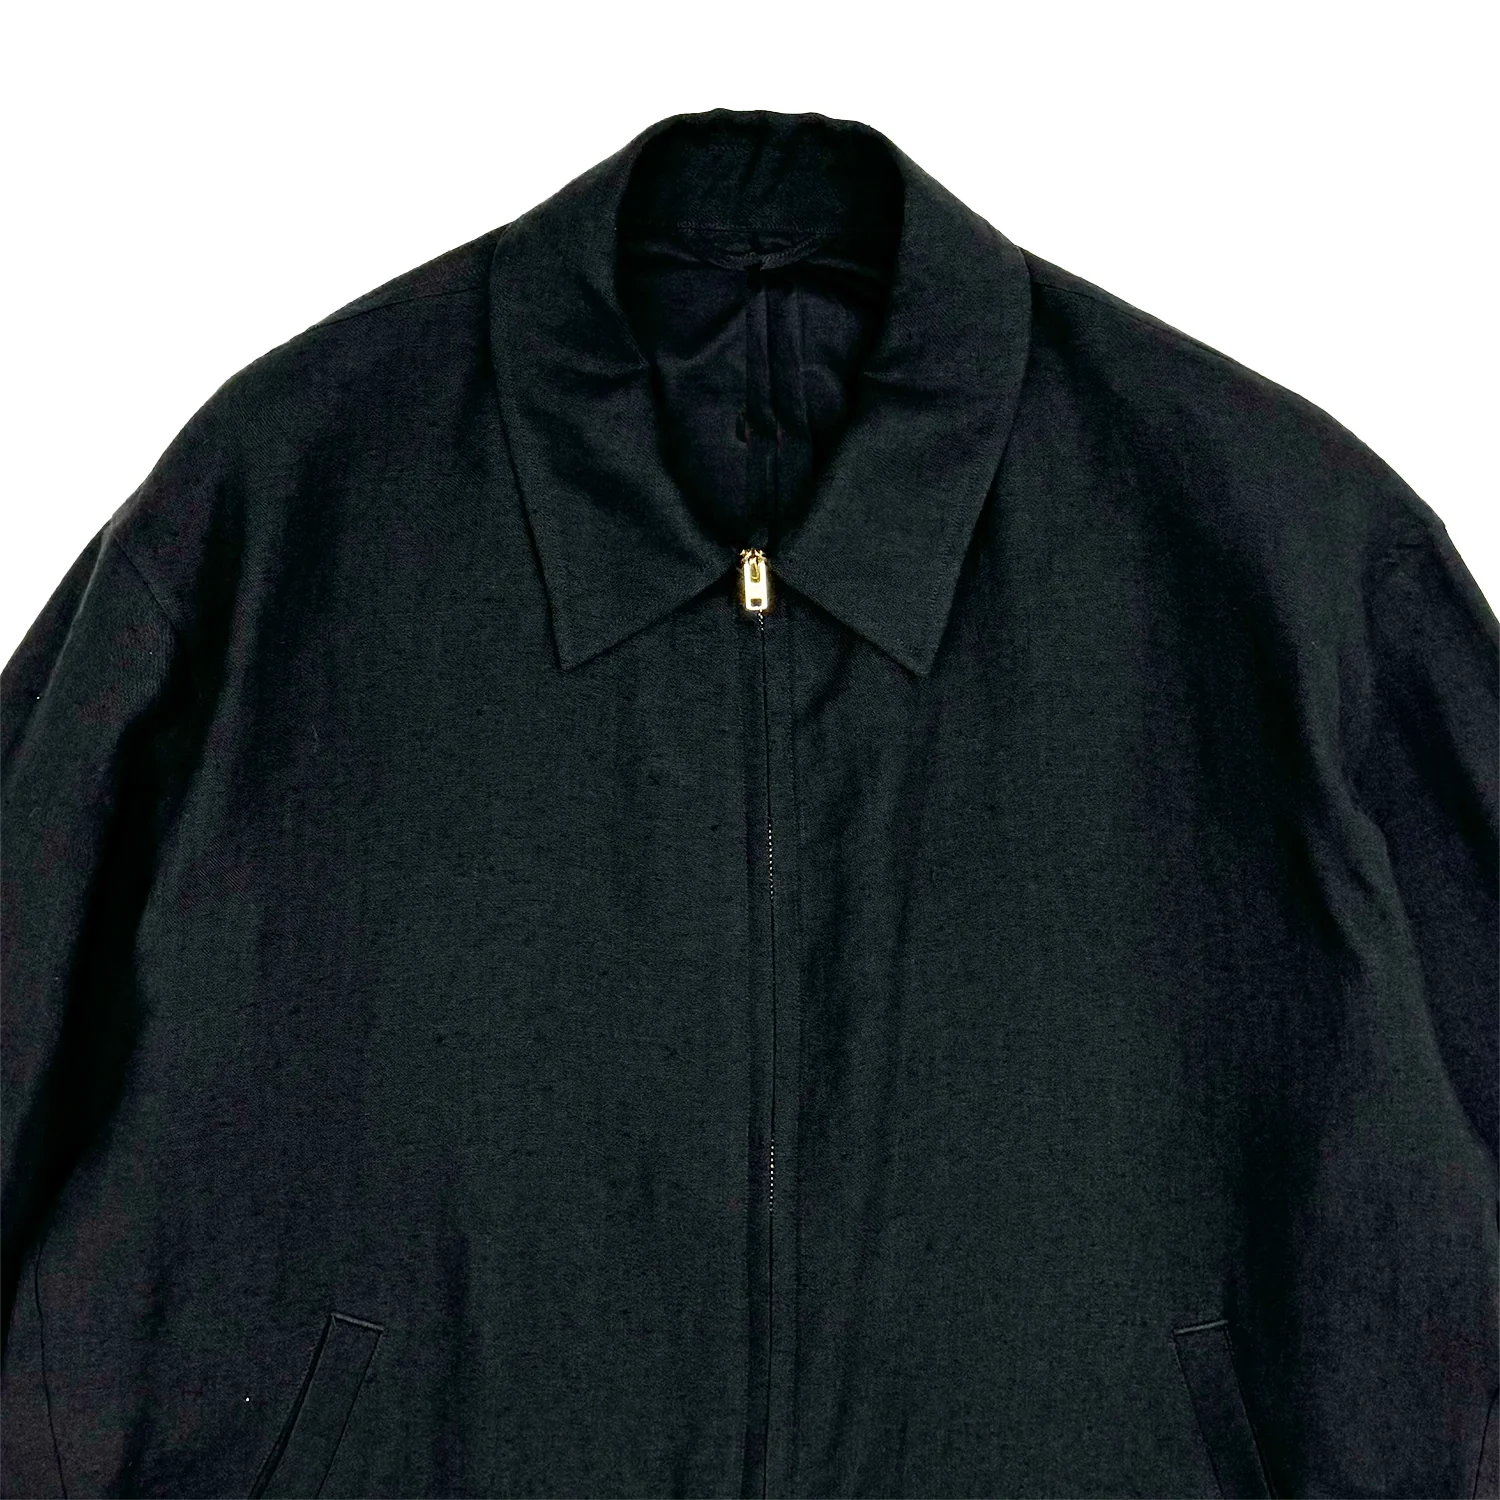 COMOLI / カナパジップショートジャケット